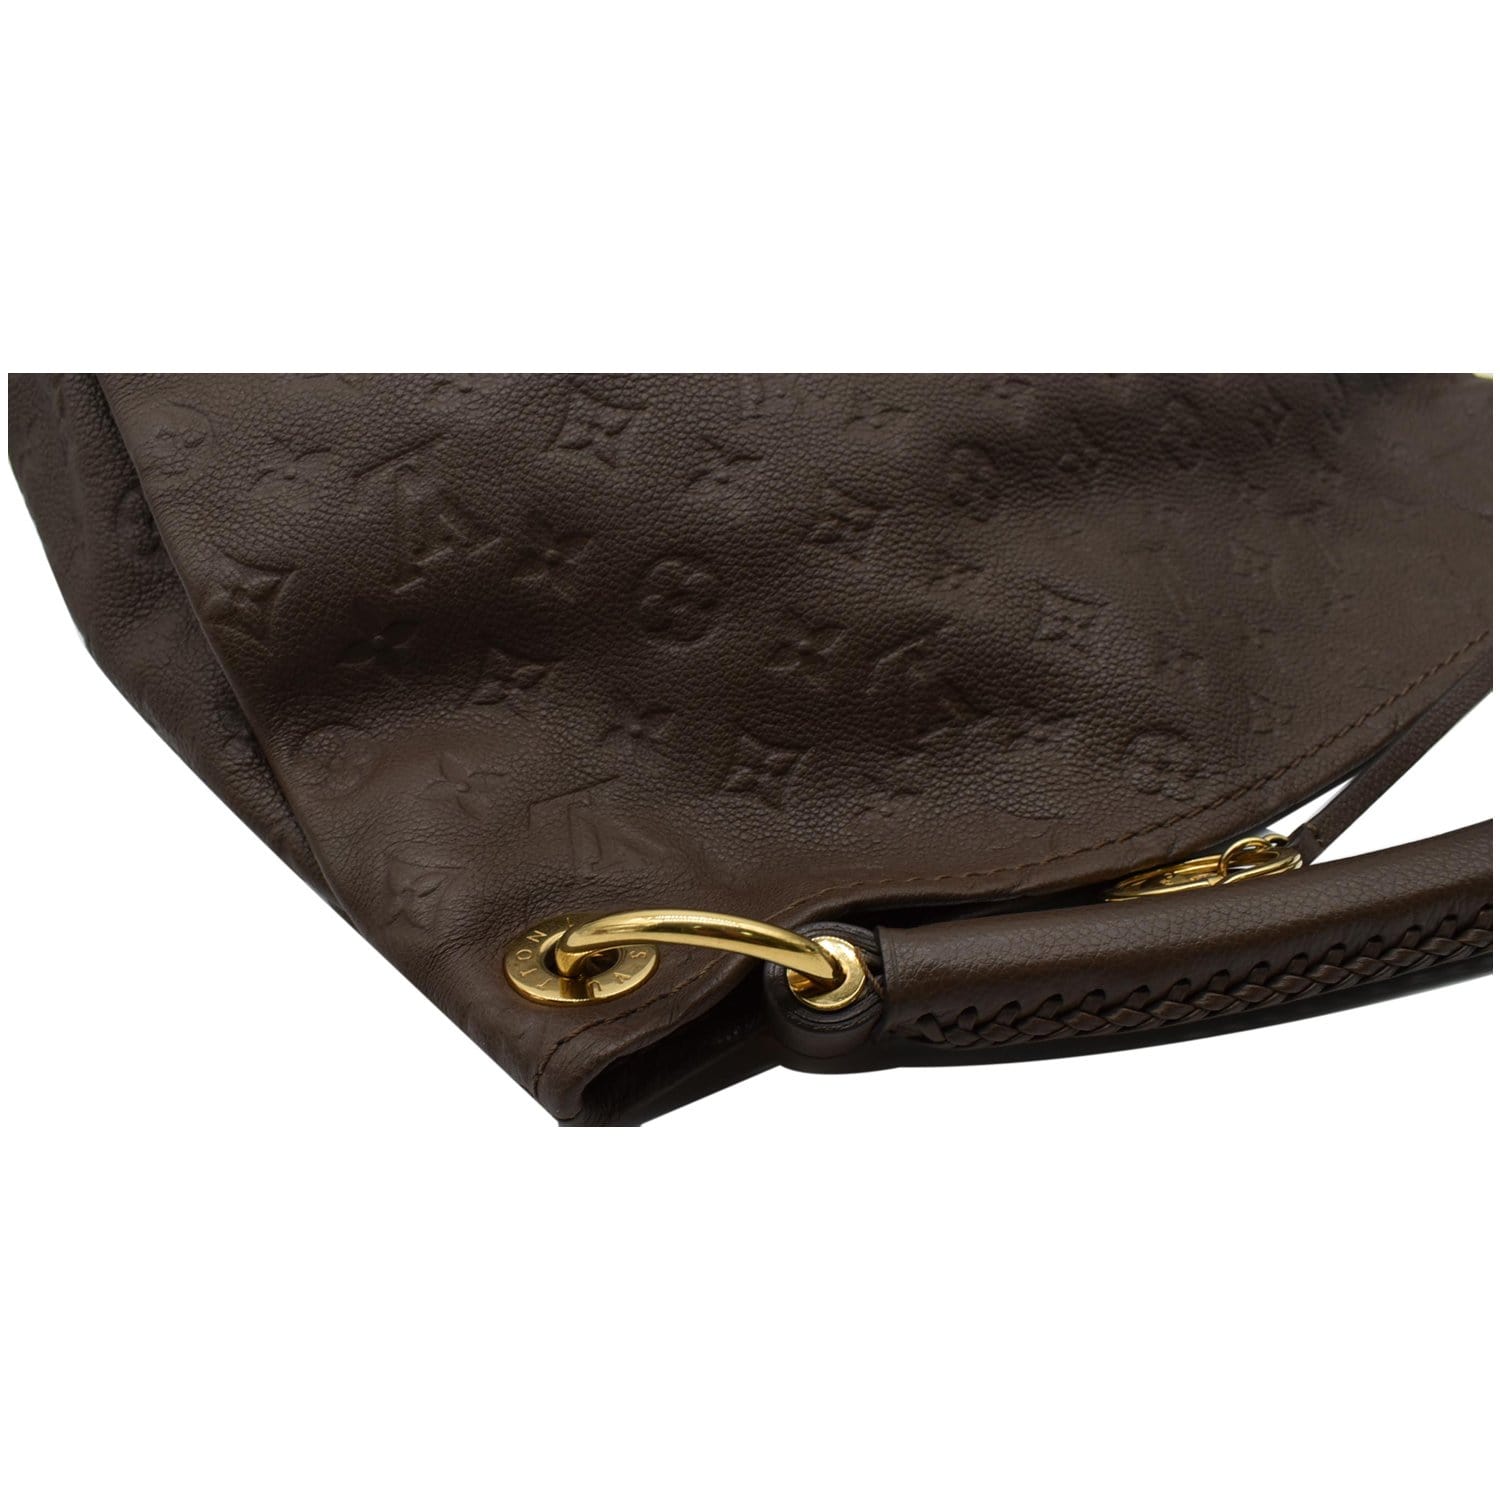 Louis Vuitton Ombre Monogram Empreinte Leather Artsy mm Bag